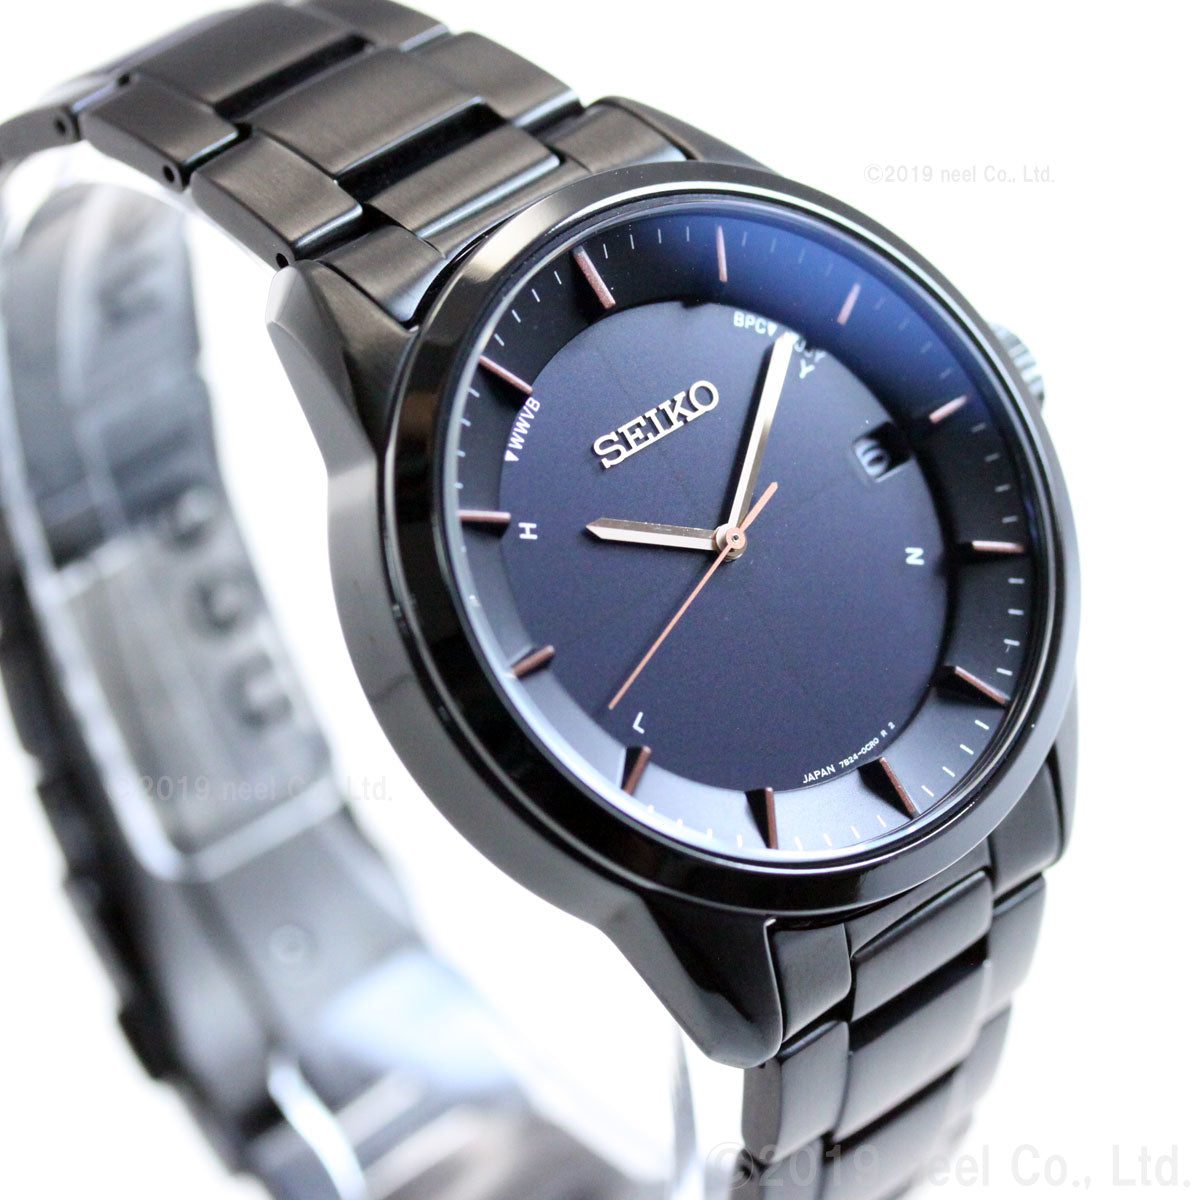 セイコー セレクション SEIKO SELECTION 電波 ソーラー ネット流通限定モデル 腕時計 メンズ SBTM277